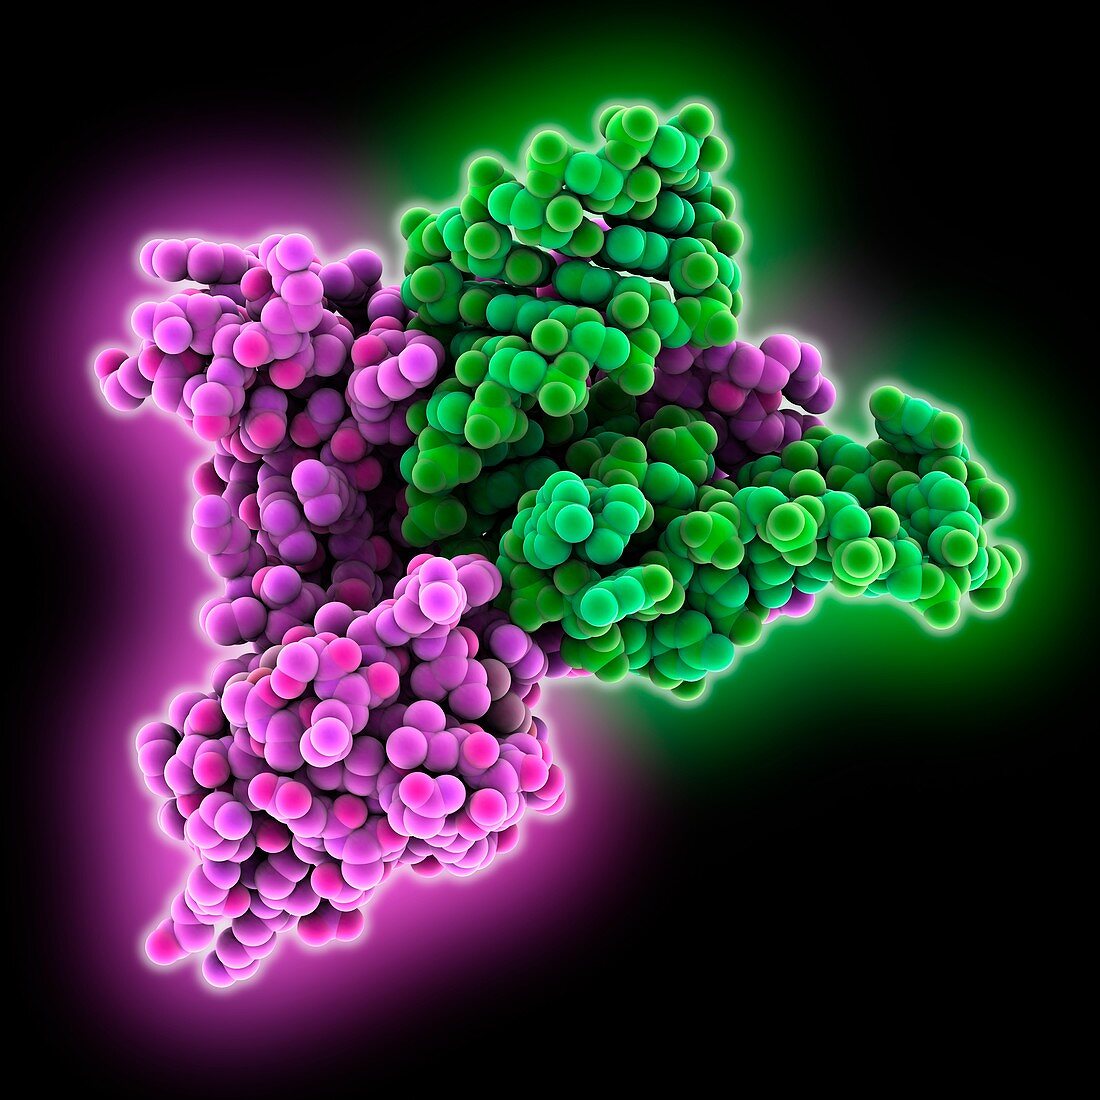 Ribosomal protein complex